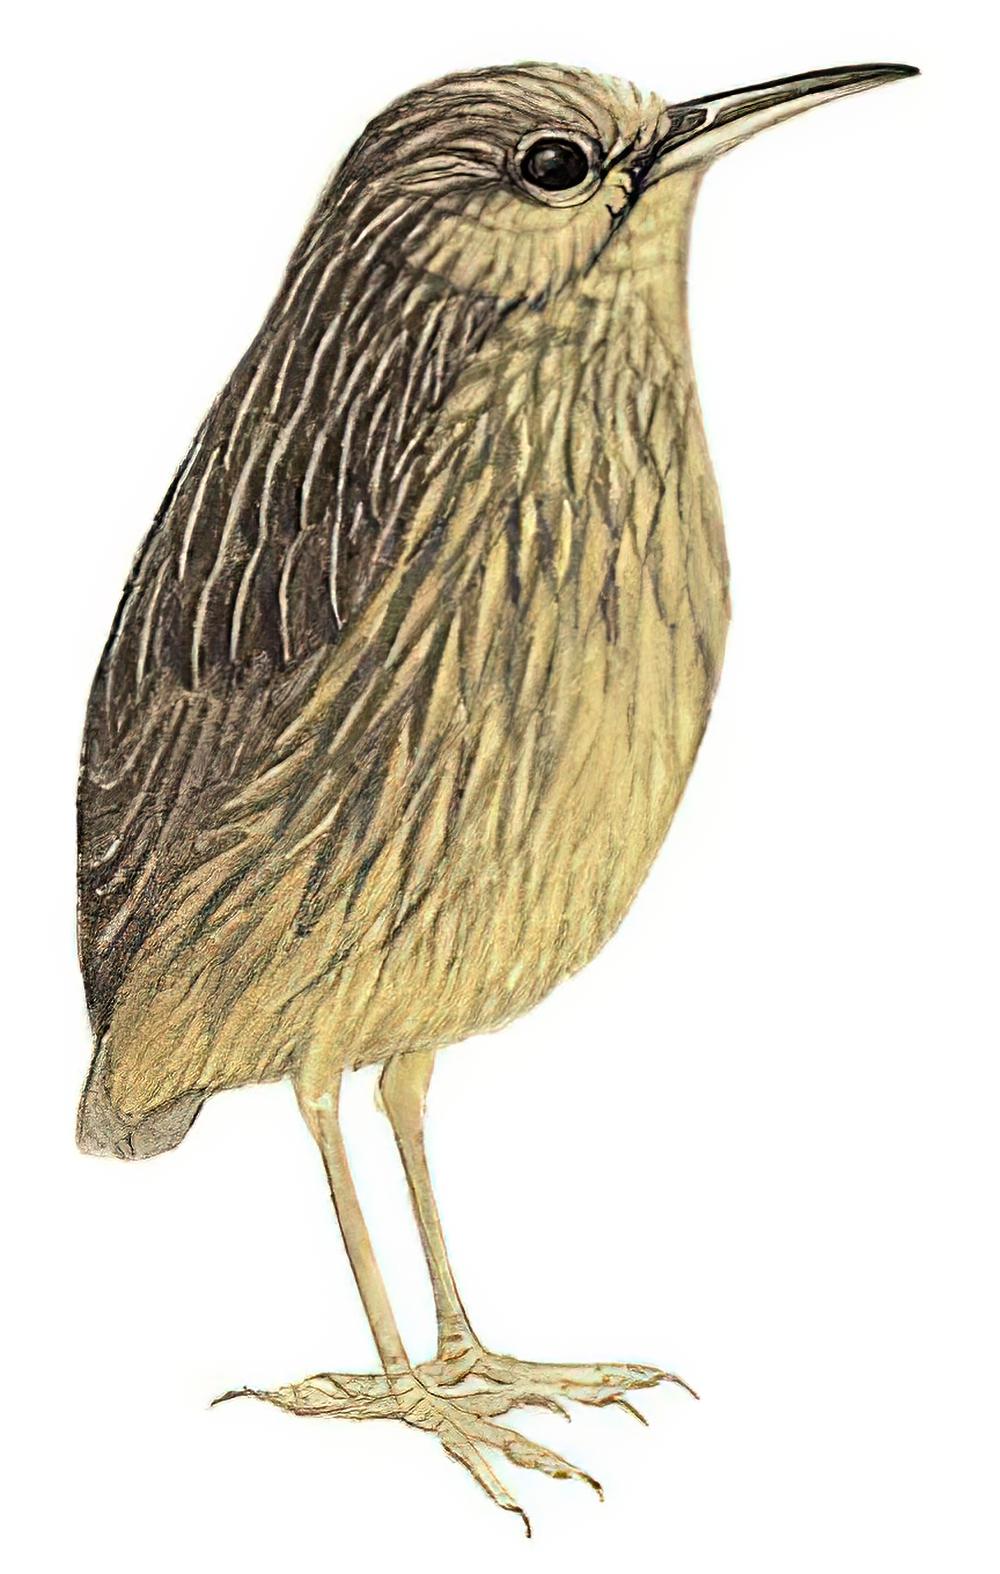 长嘴鹩鹛 / Long-billed Wren-Babbler / Napothera malacoptila